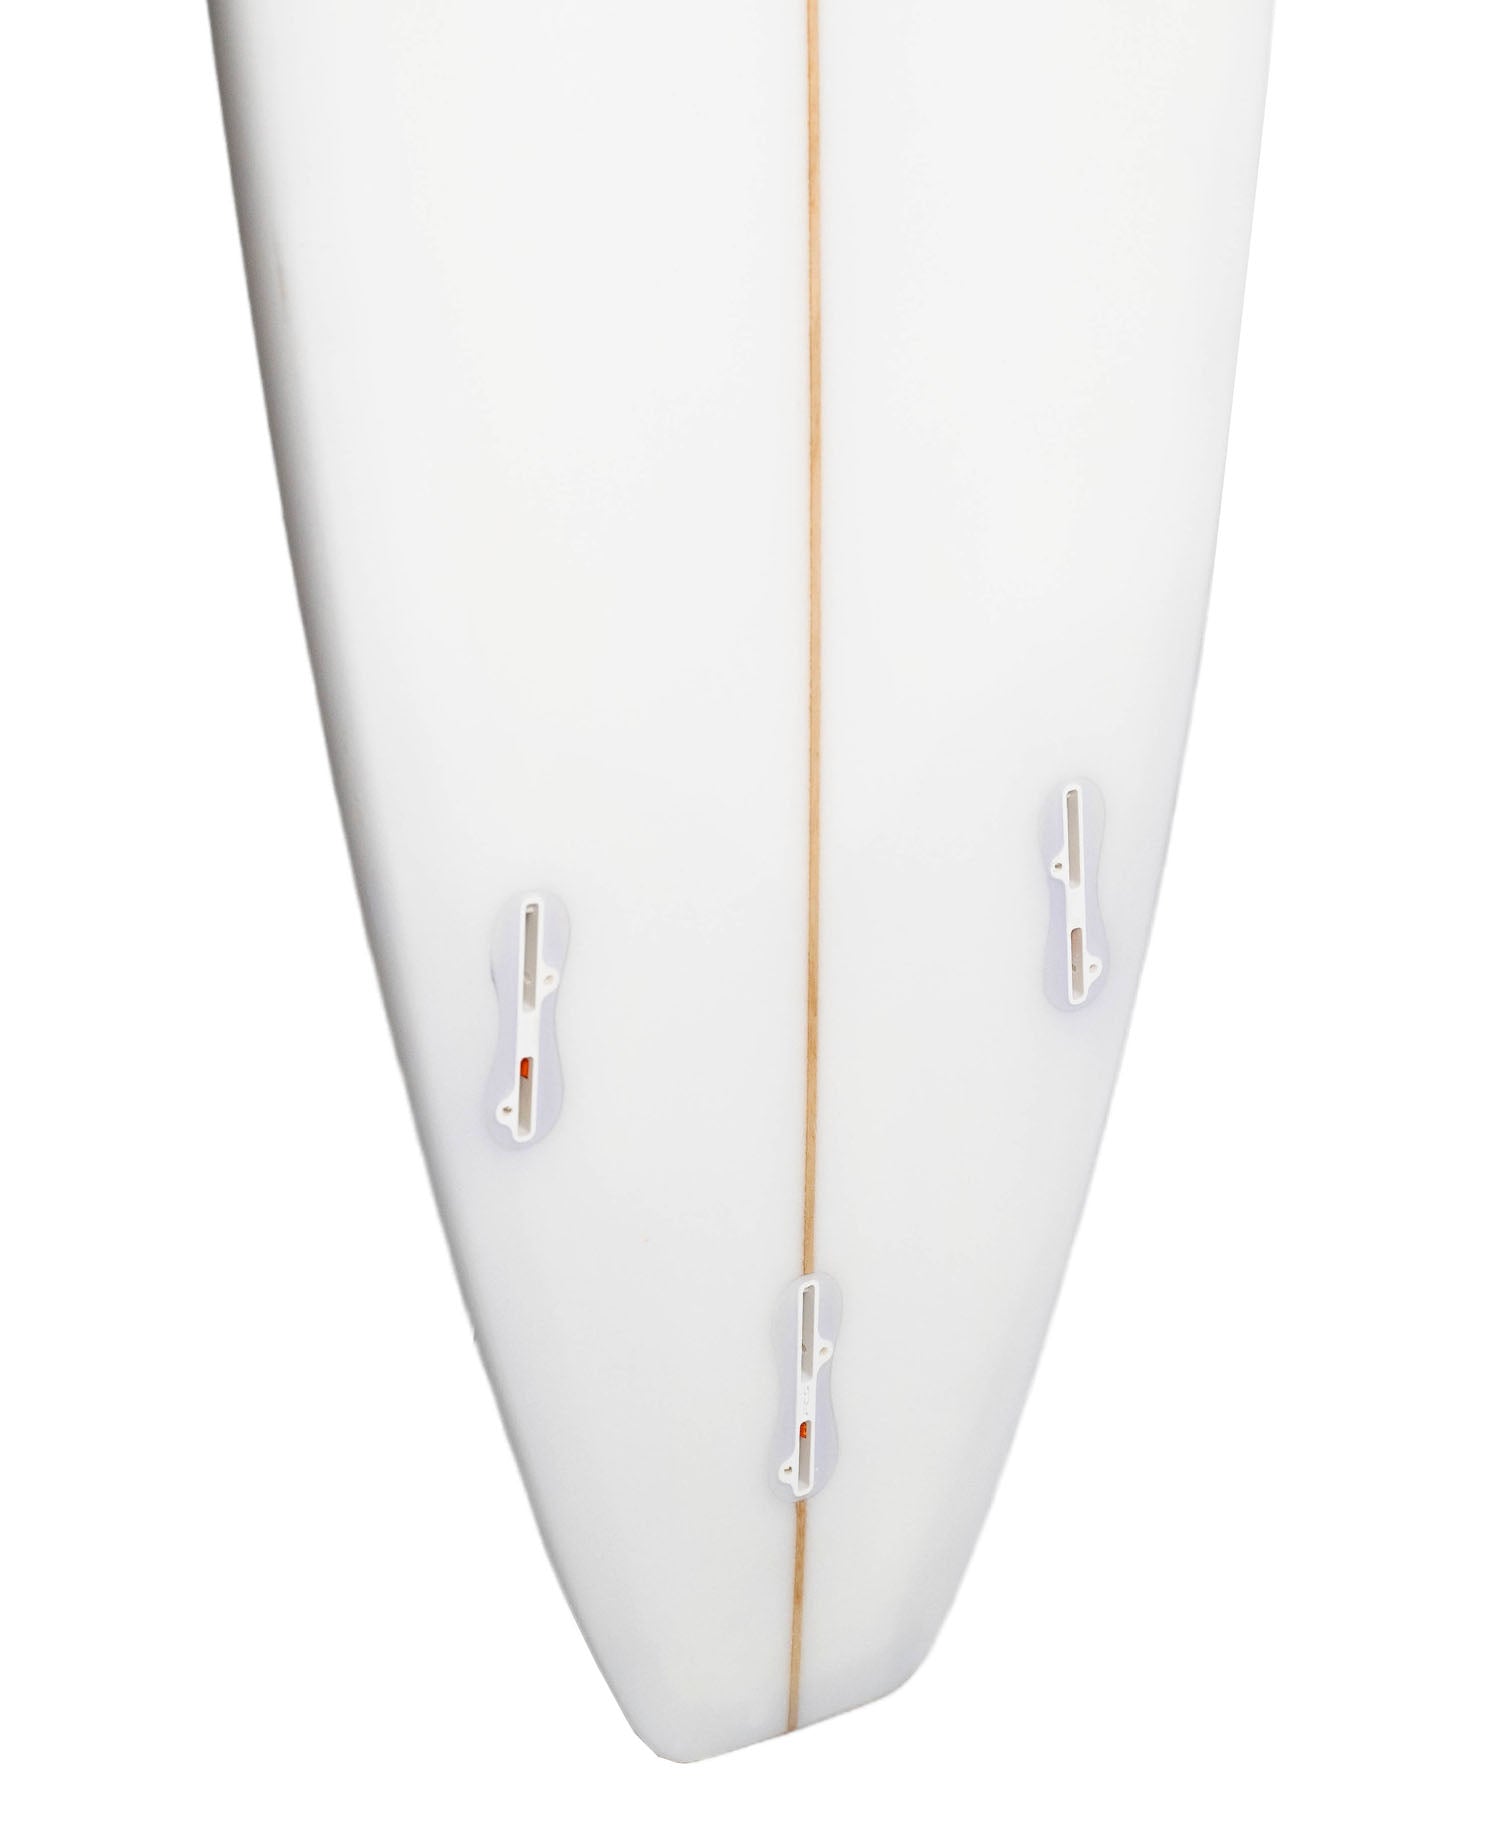 SHANE SURFBOARDS 'CRUISER' MINI MAL